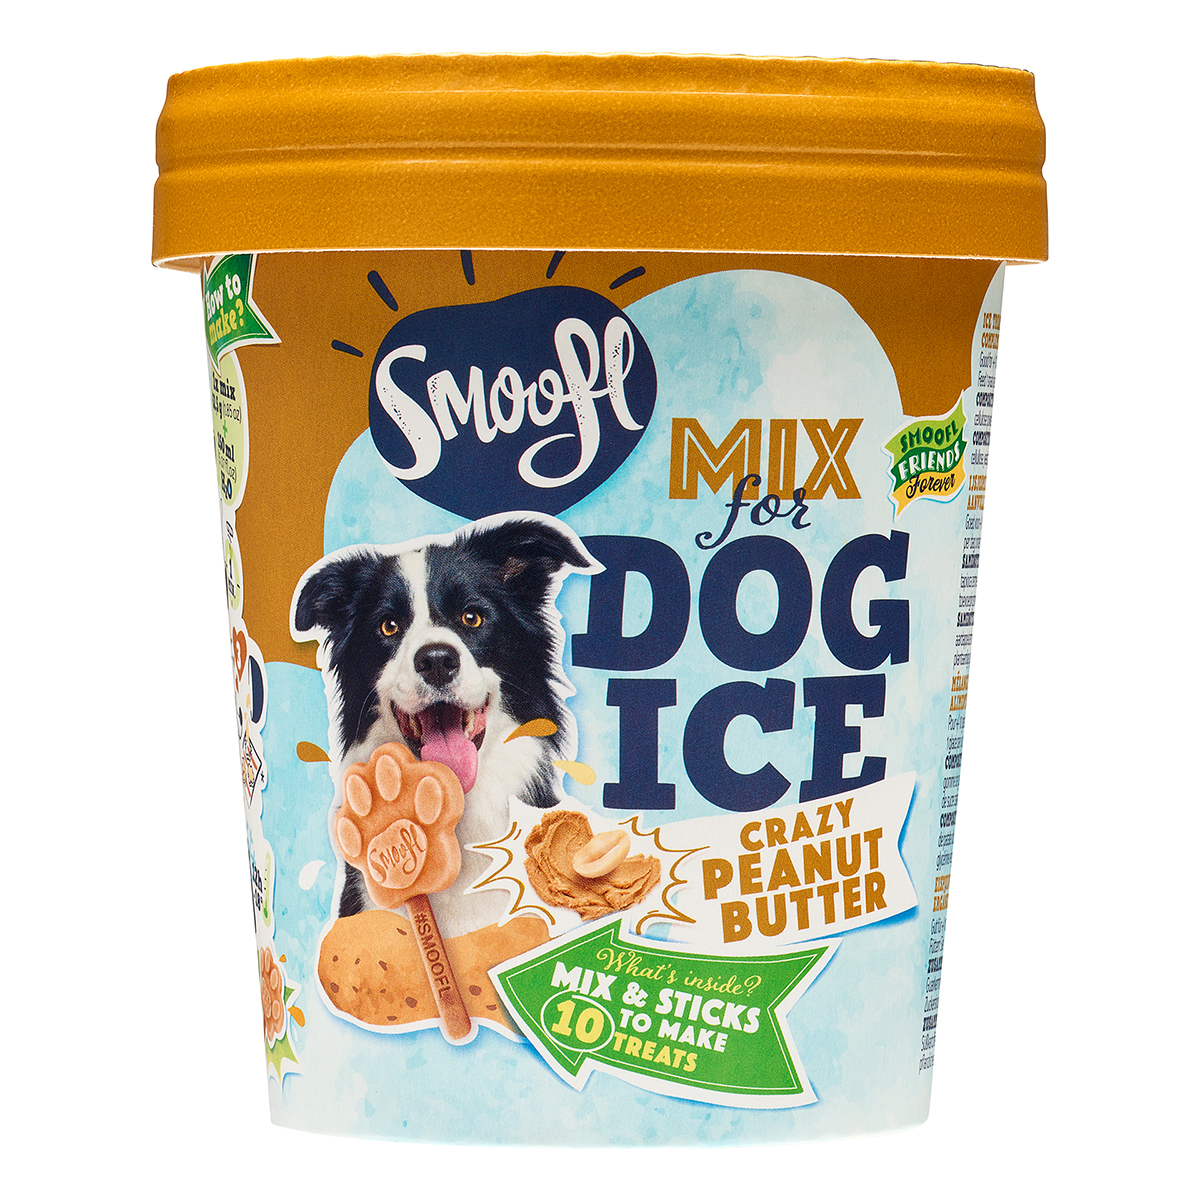 Mistura de gelado Smoofl para cães adultos - Manteiga de amendoim